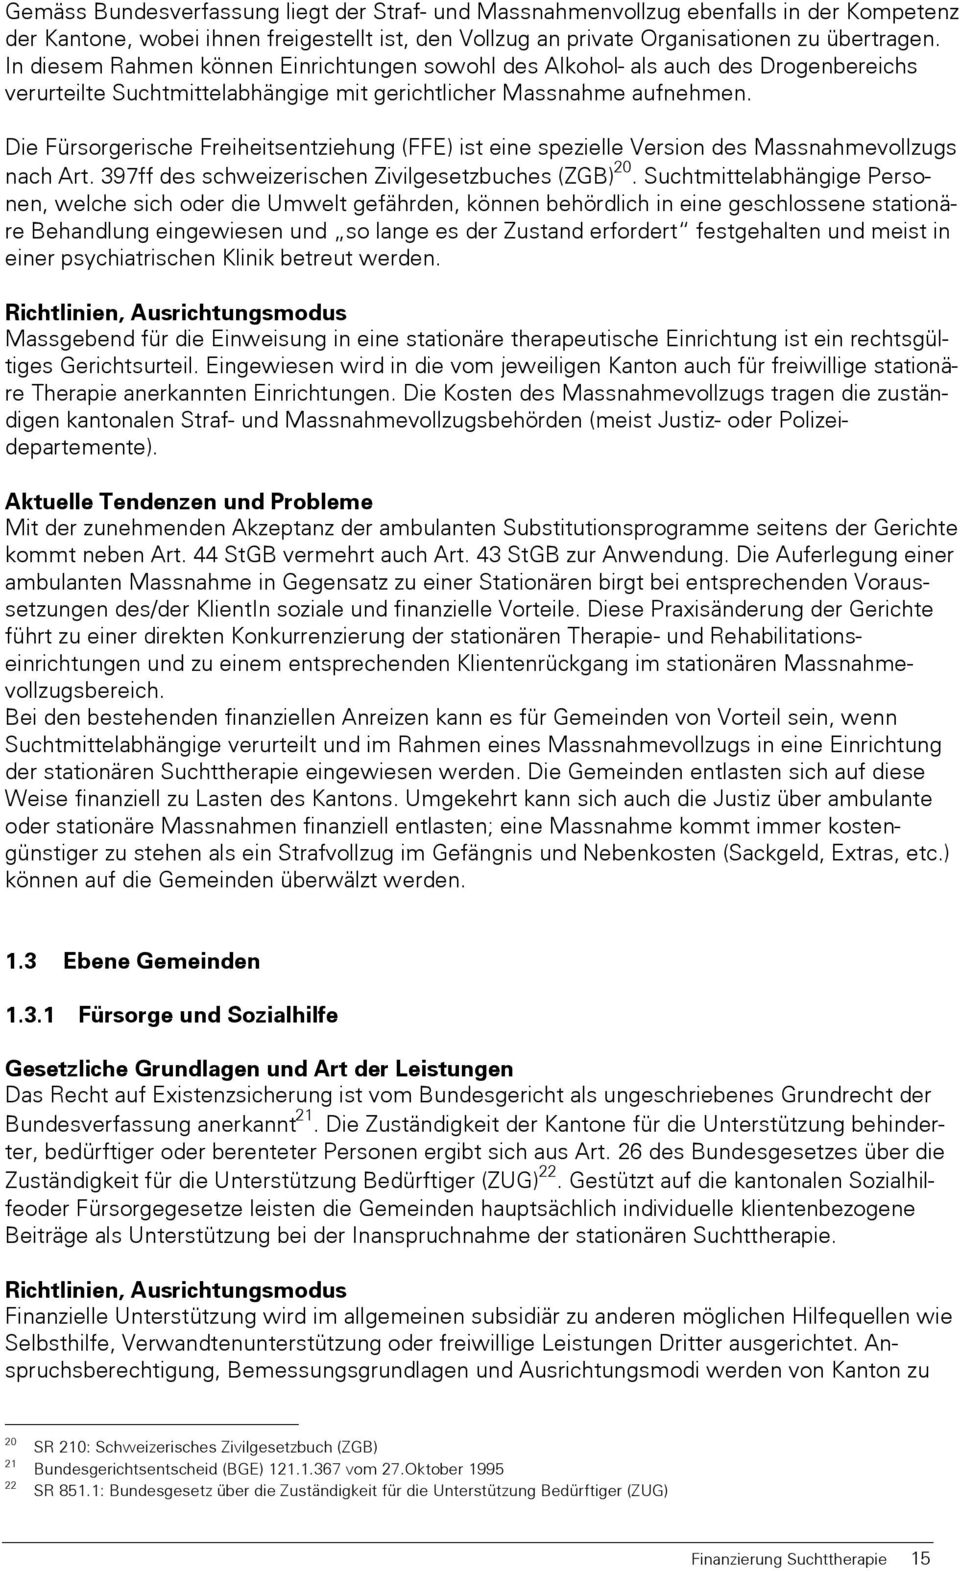 Die Fürsorgerische Freiheitsentziehung (FFE) ist eine spezielle Version des Massnahmevollzugs nach Art. 397ff des schweizerischen Zivilgesetzbuches (ZGB) 20.